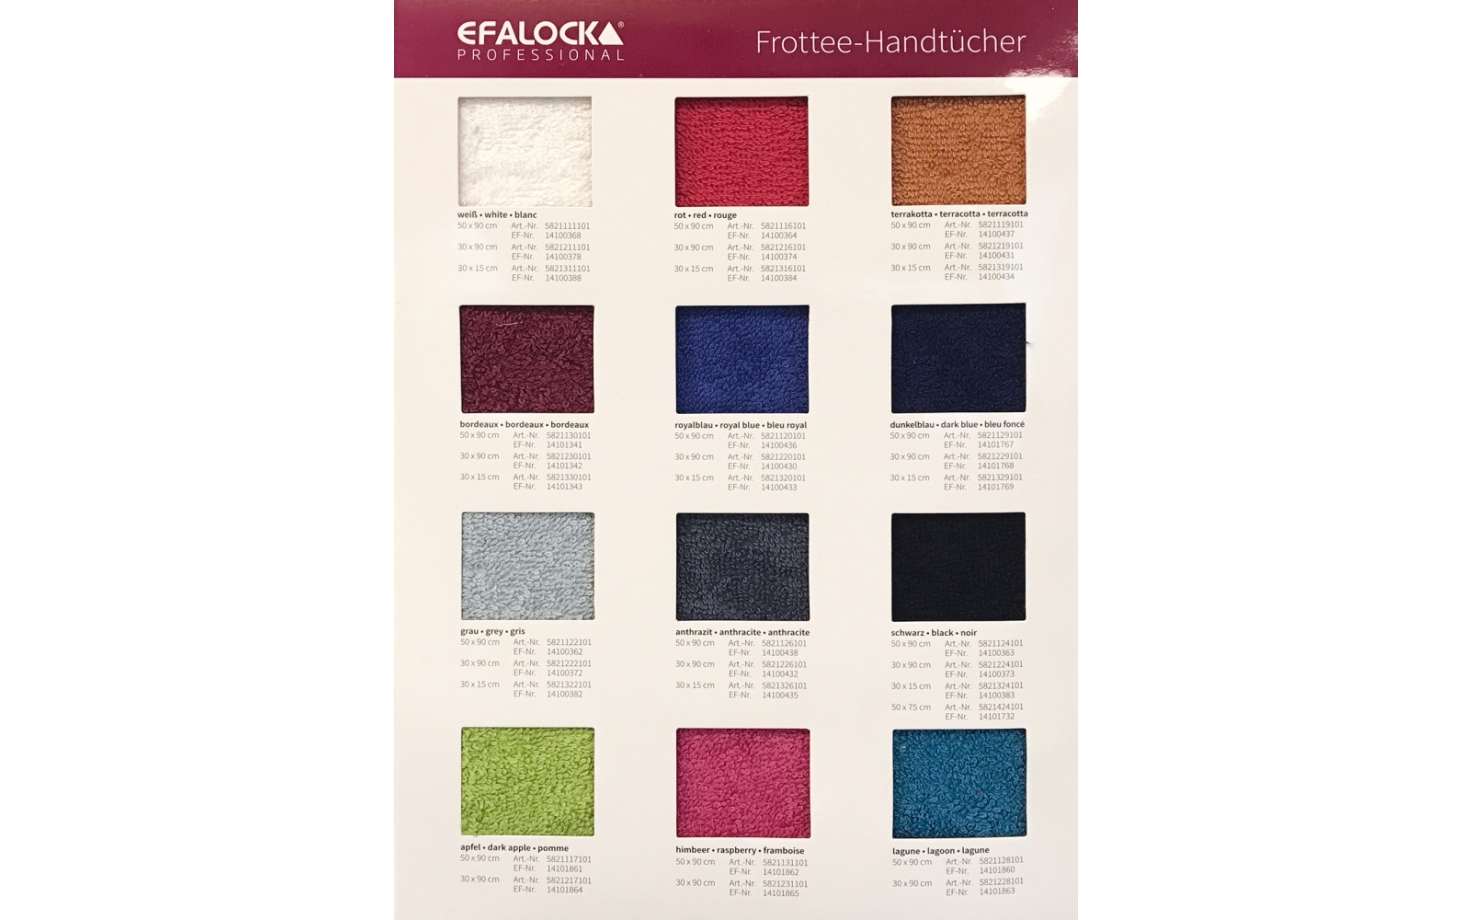 Efalock Farbkarte für Handtücher